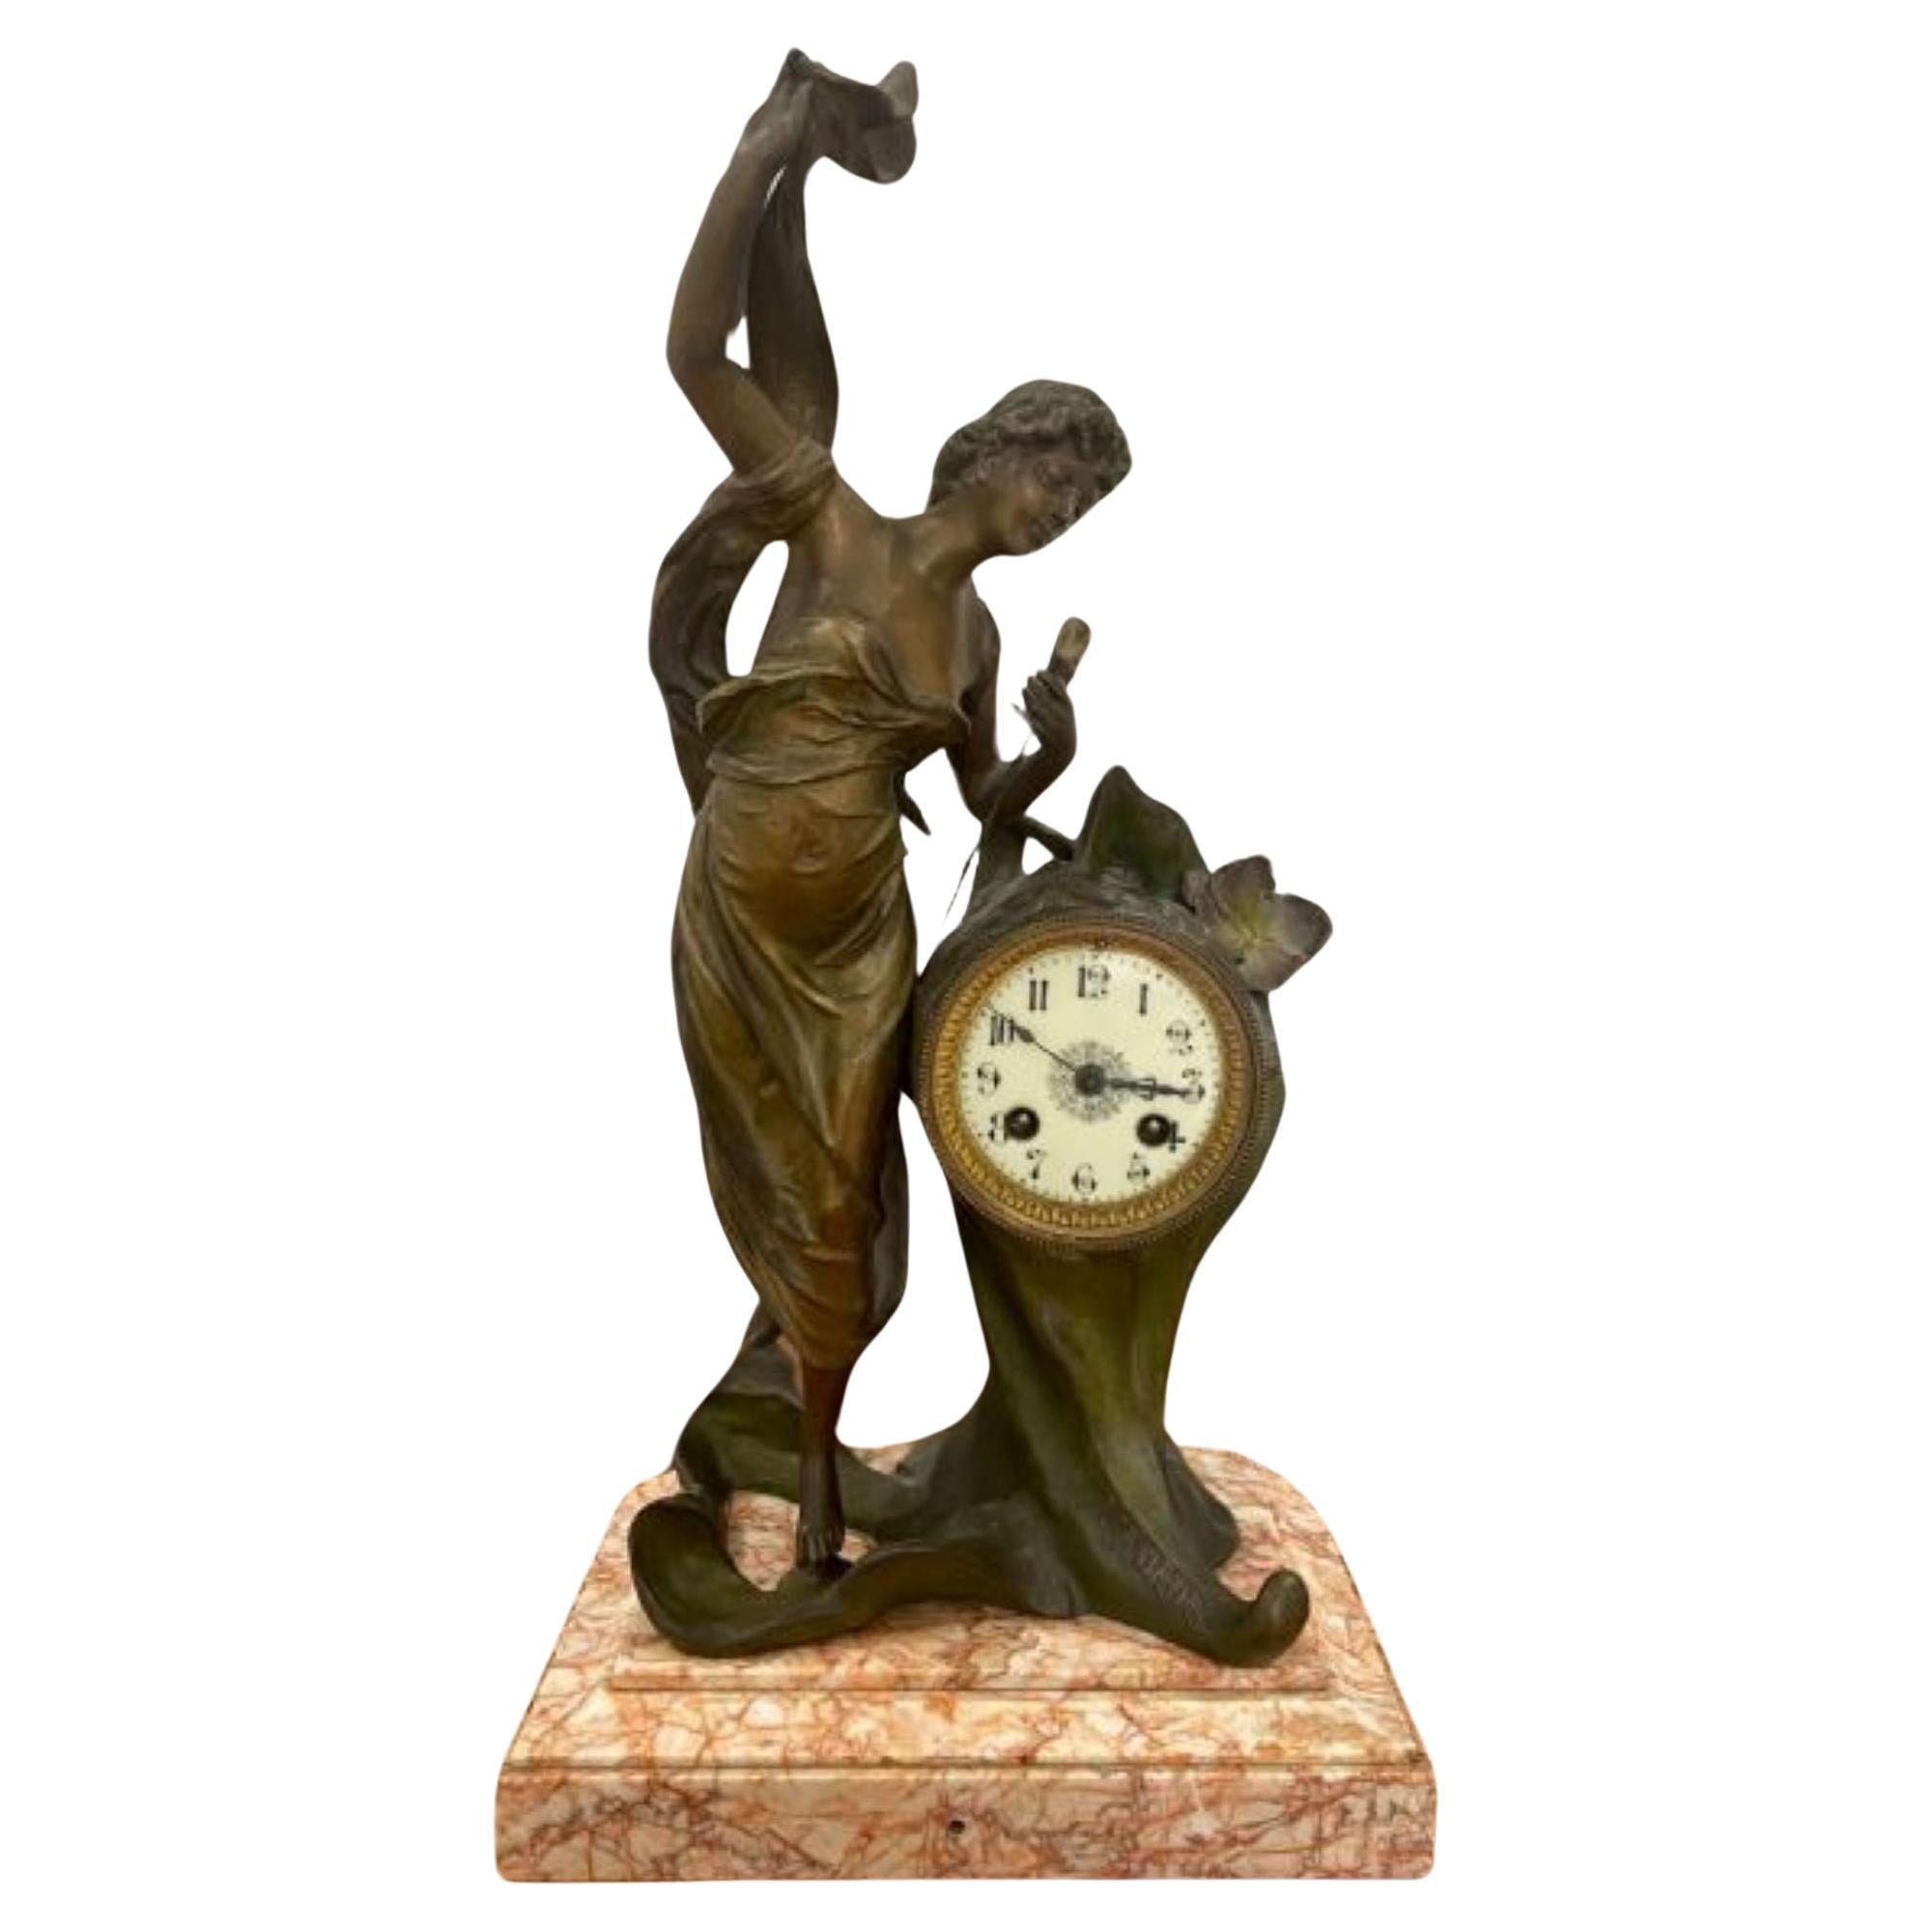 Quality Antique Art Nouveau French L'AURORE mantle clock For Sale